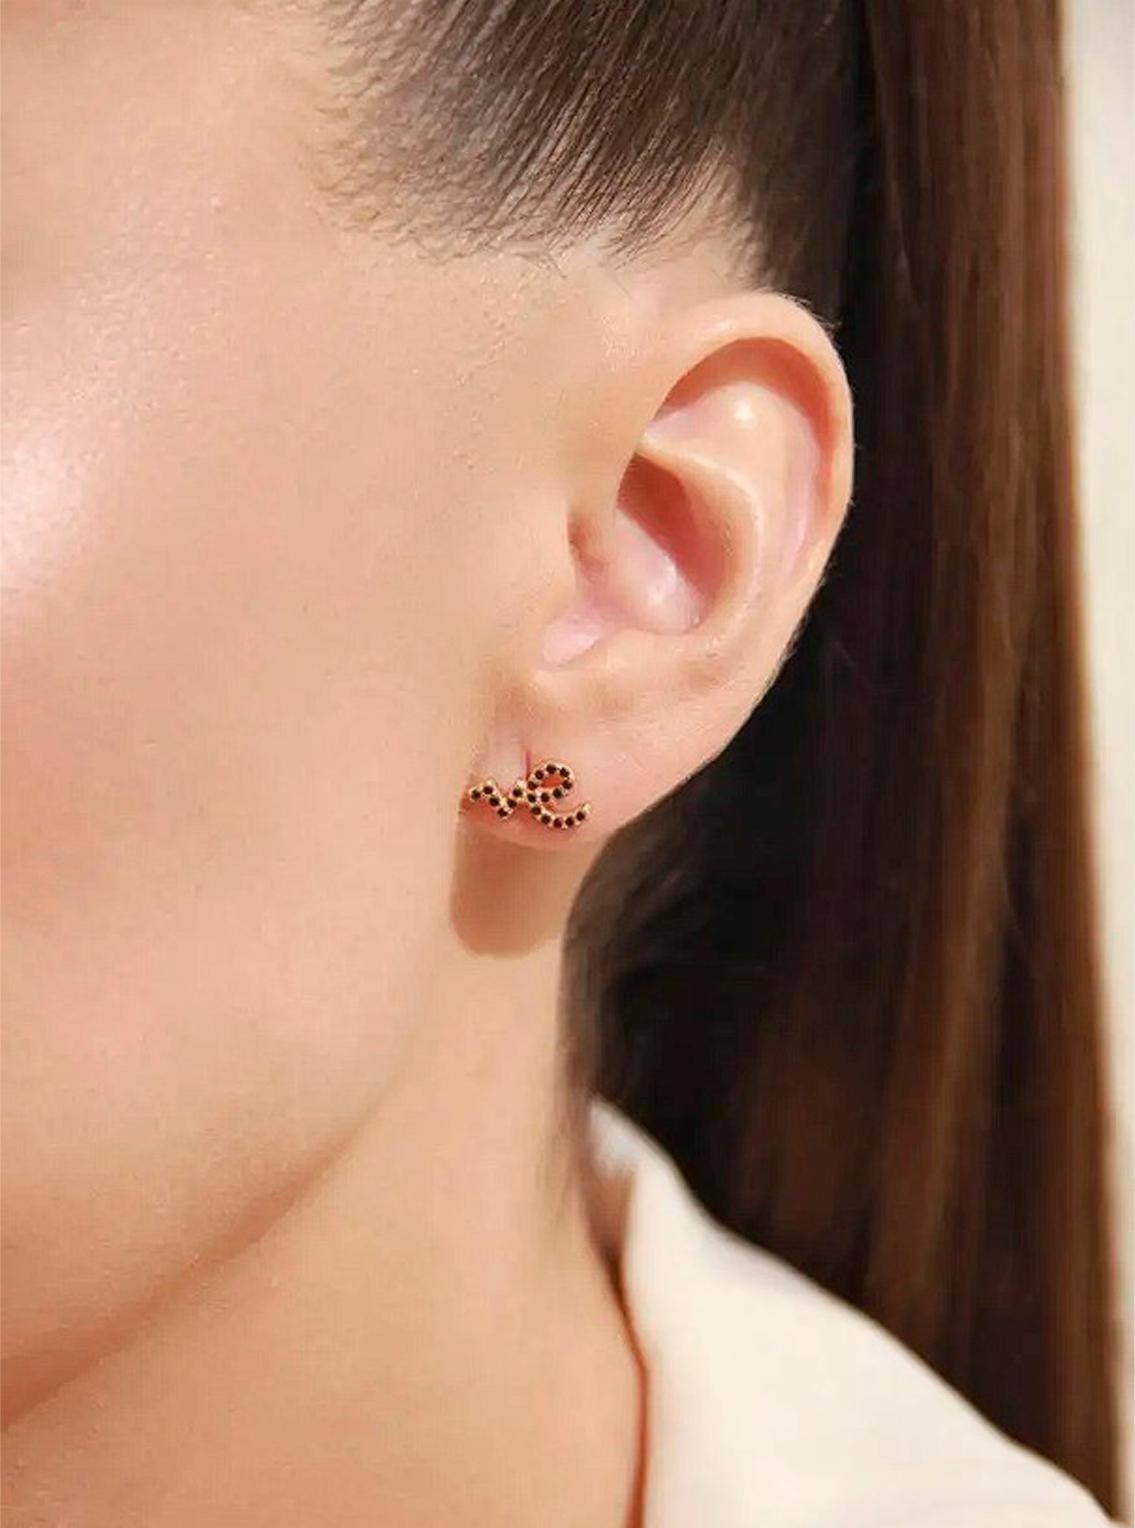 Women's Love earrings studs 14k gold.  For Sale